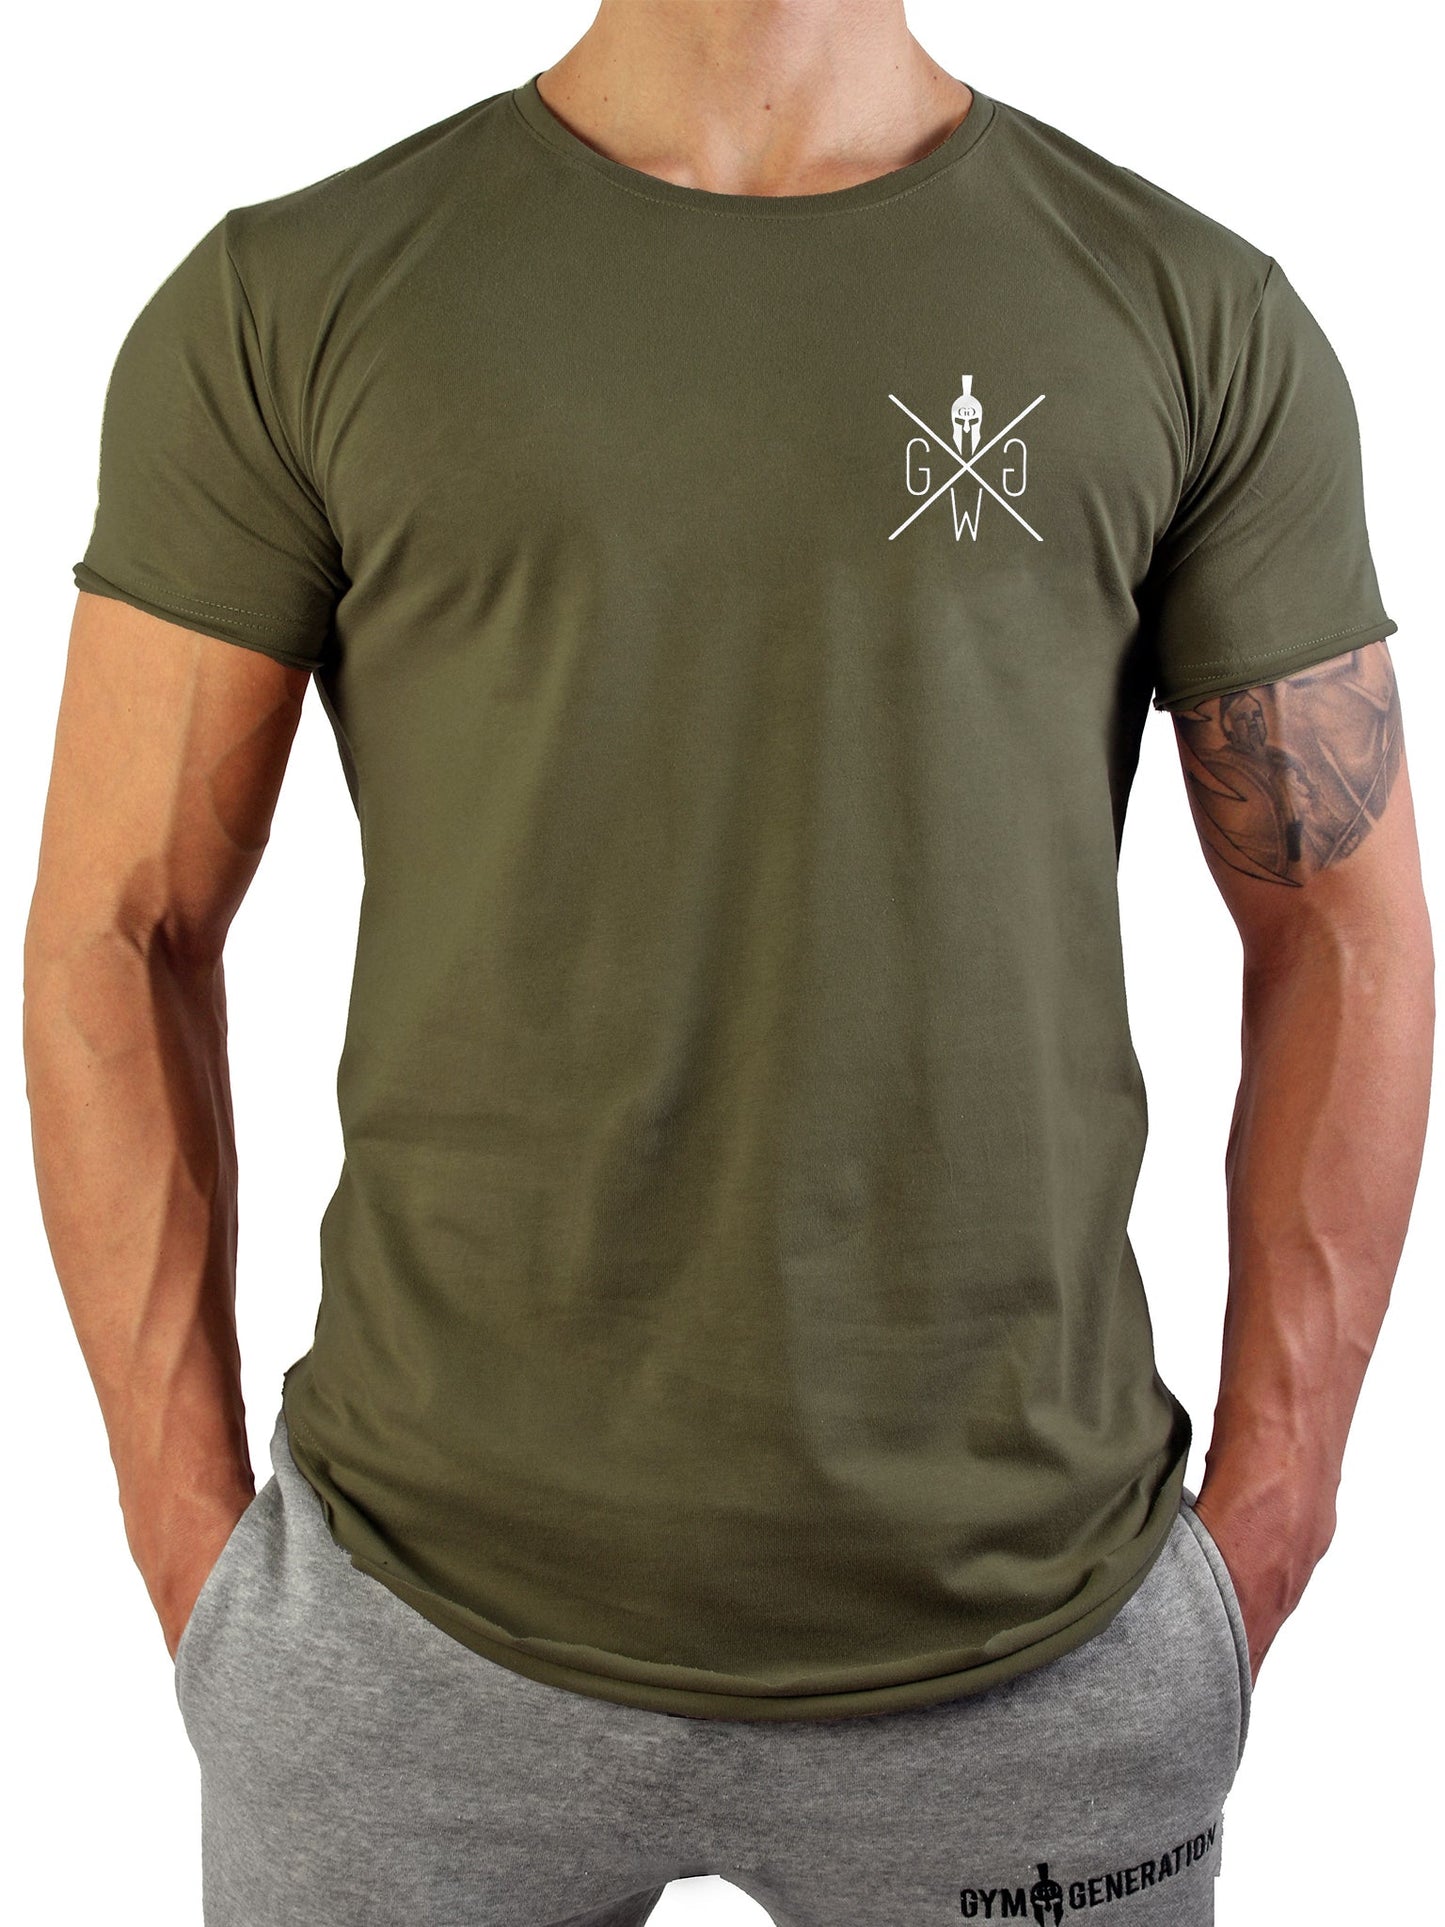 Vielseitiges und bequemes Valhalla T-Shirt in Olive für Herren, perfekt für das Fitnessstudio und den Alltag.